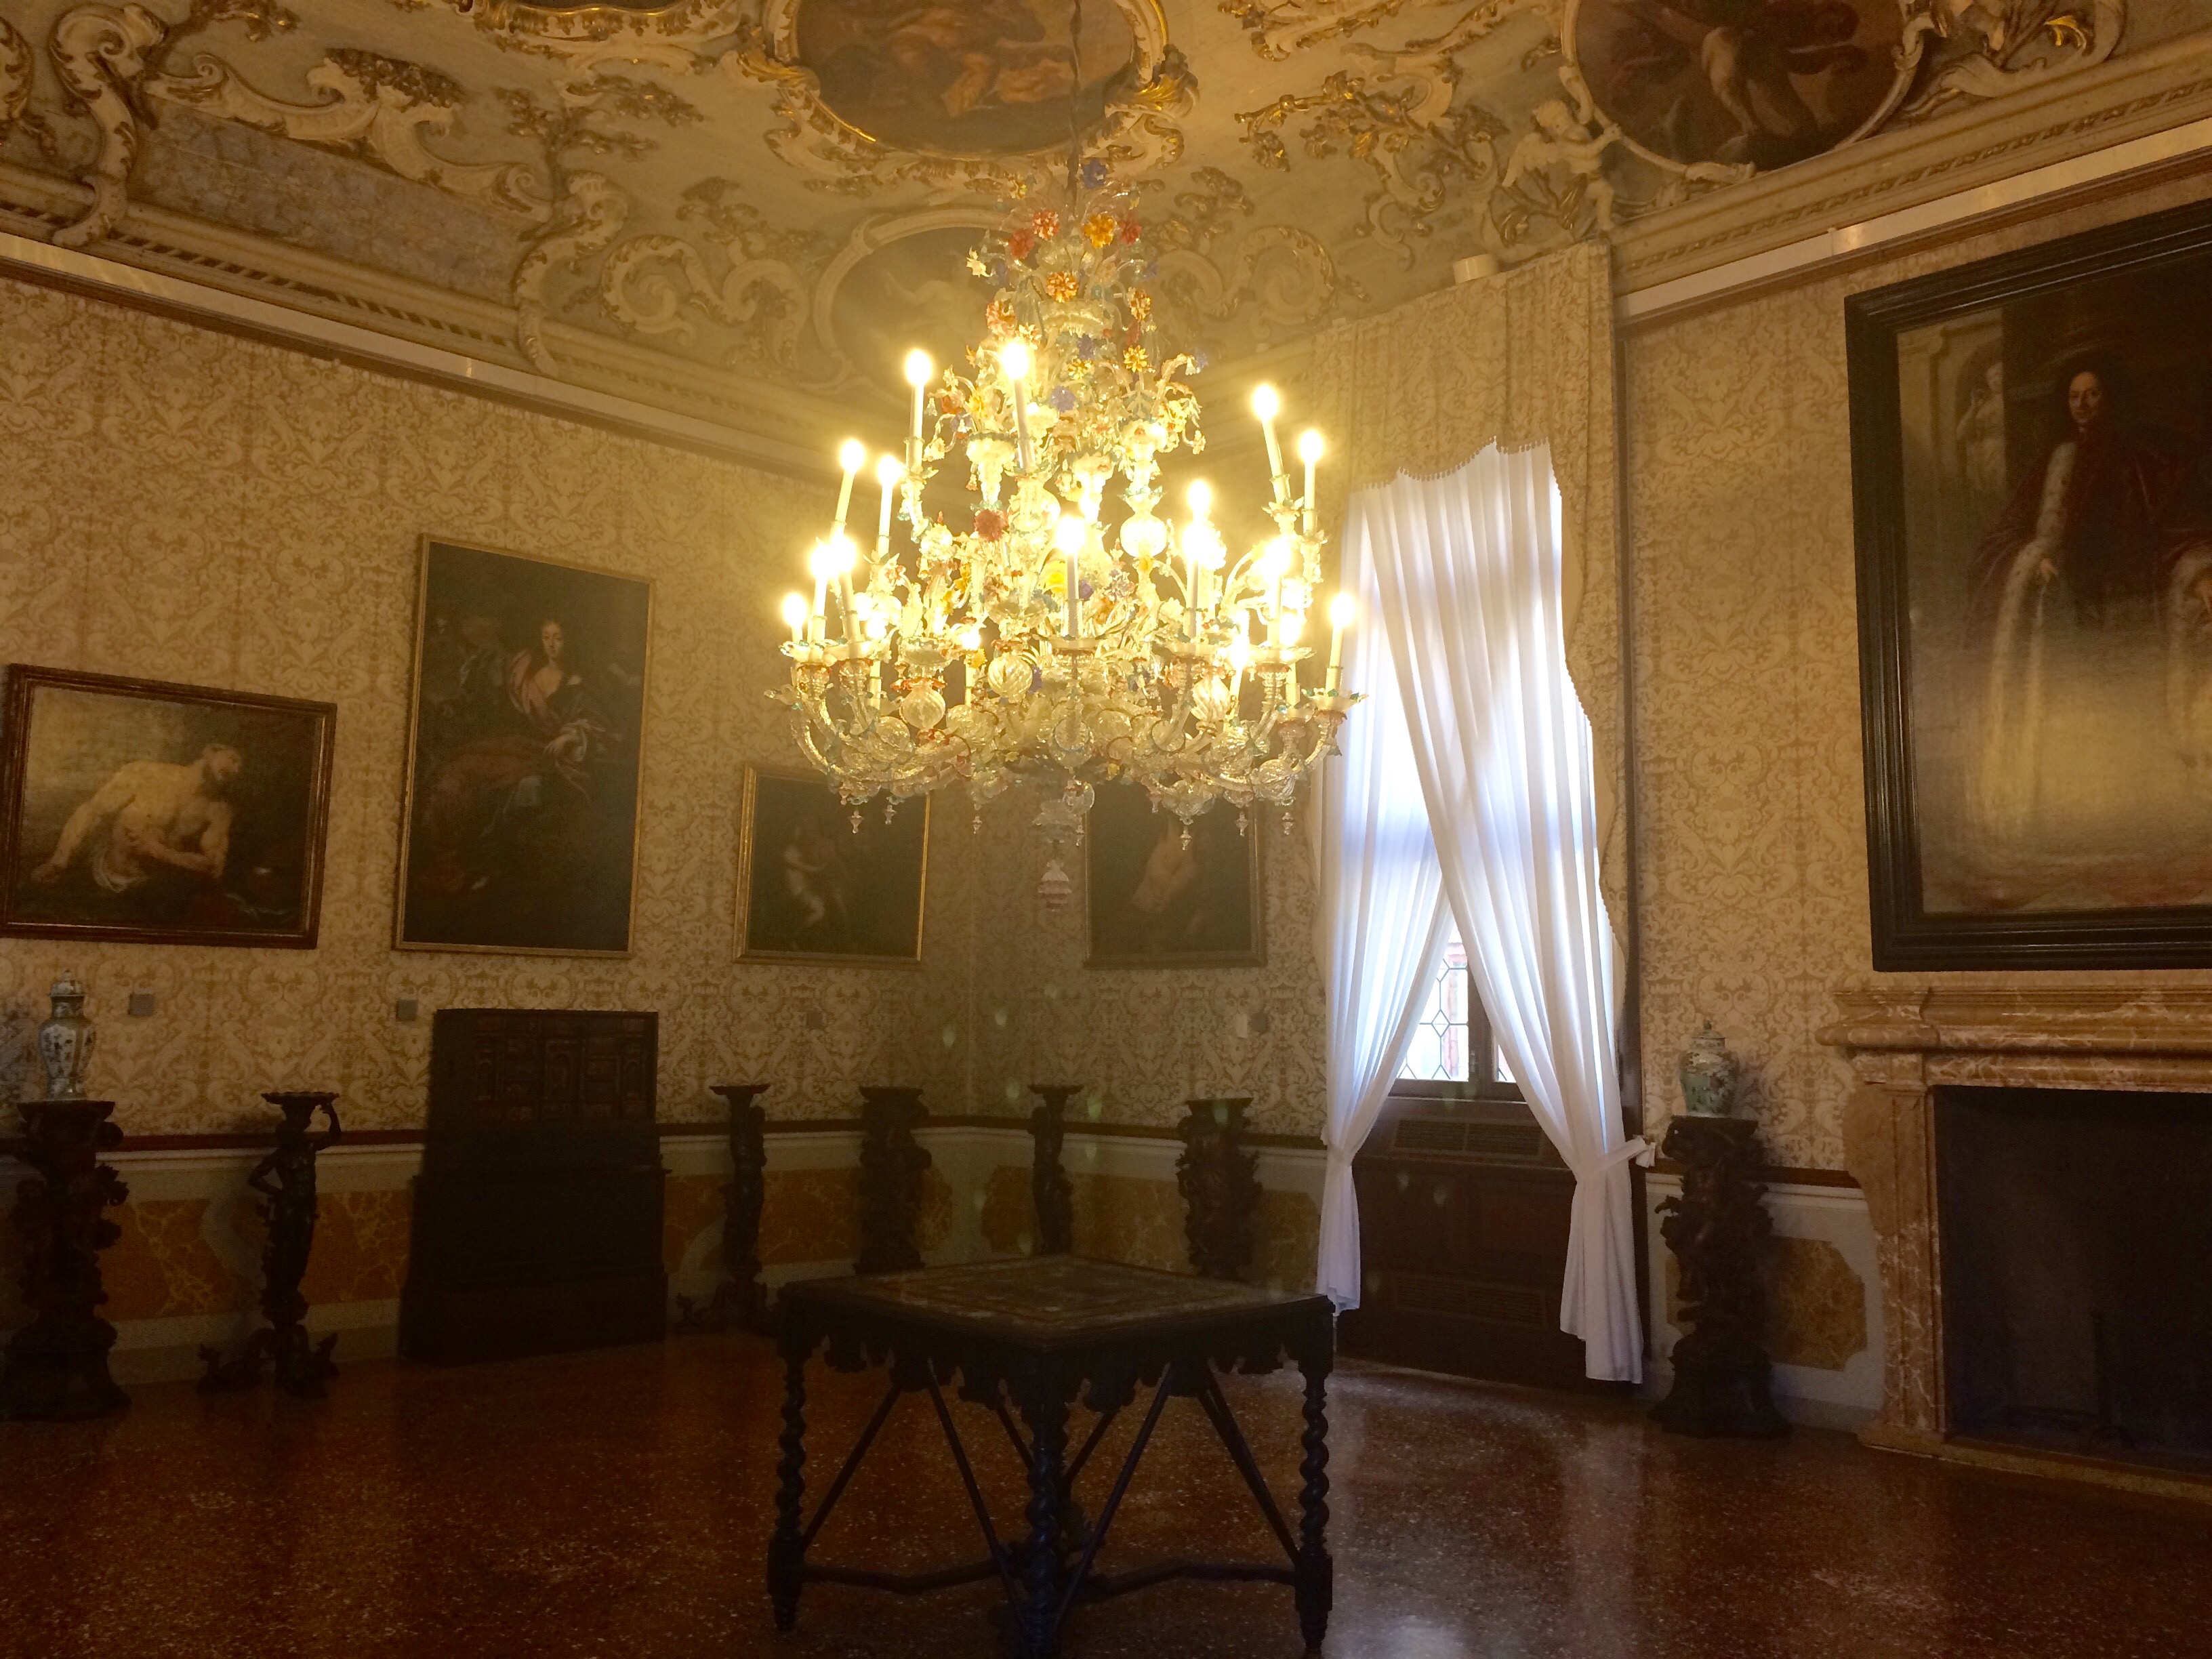 Venice Ca' Rezzonico Brustolon Room chandelier